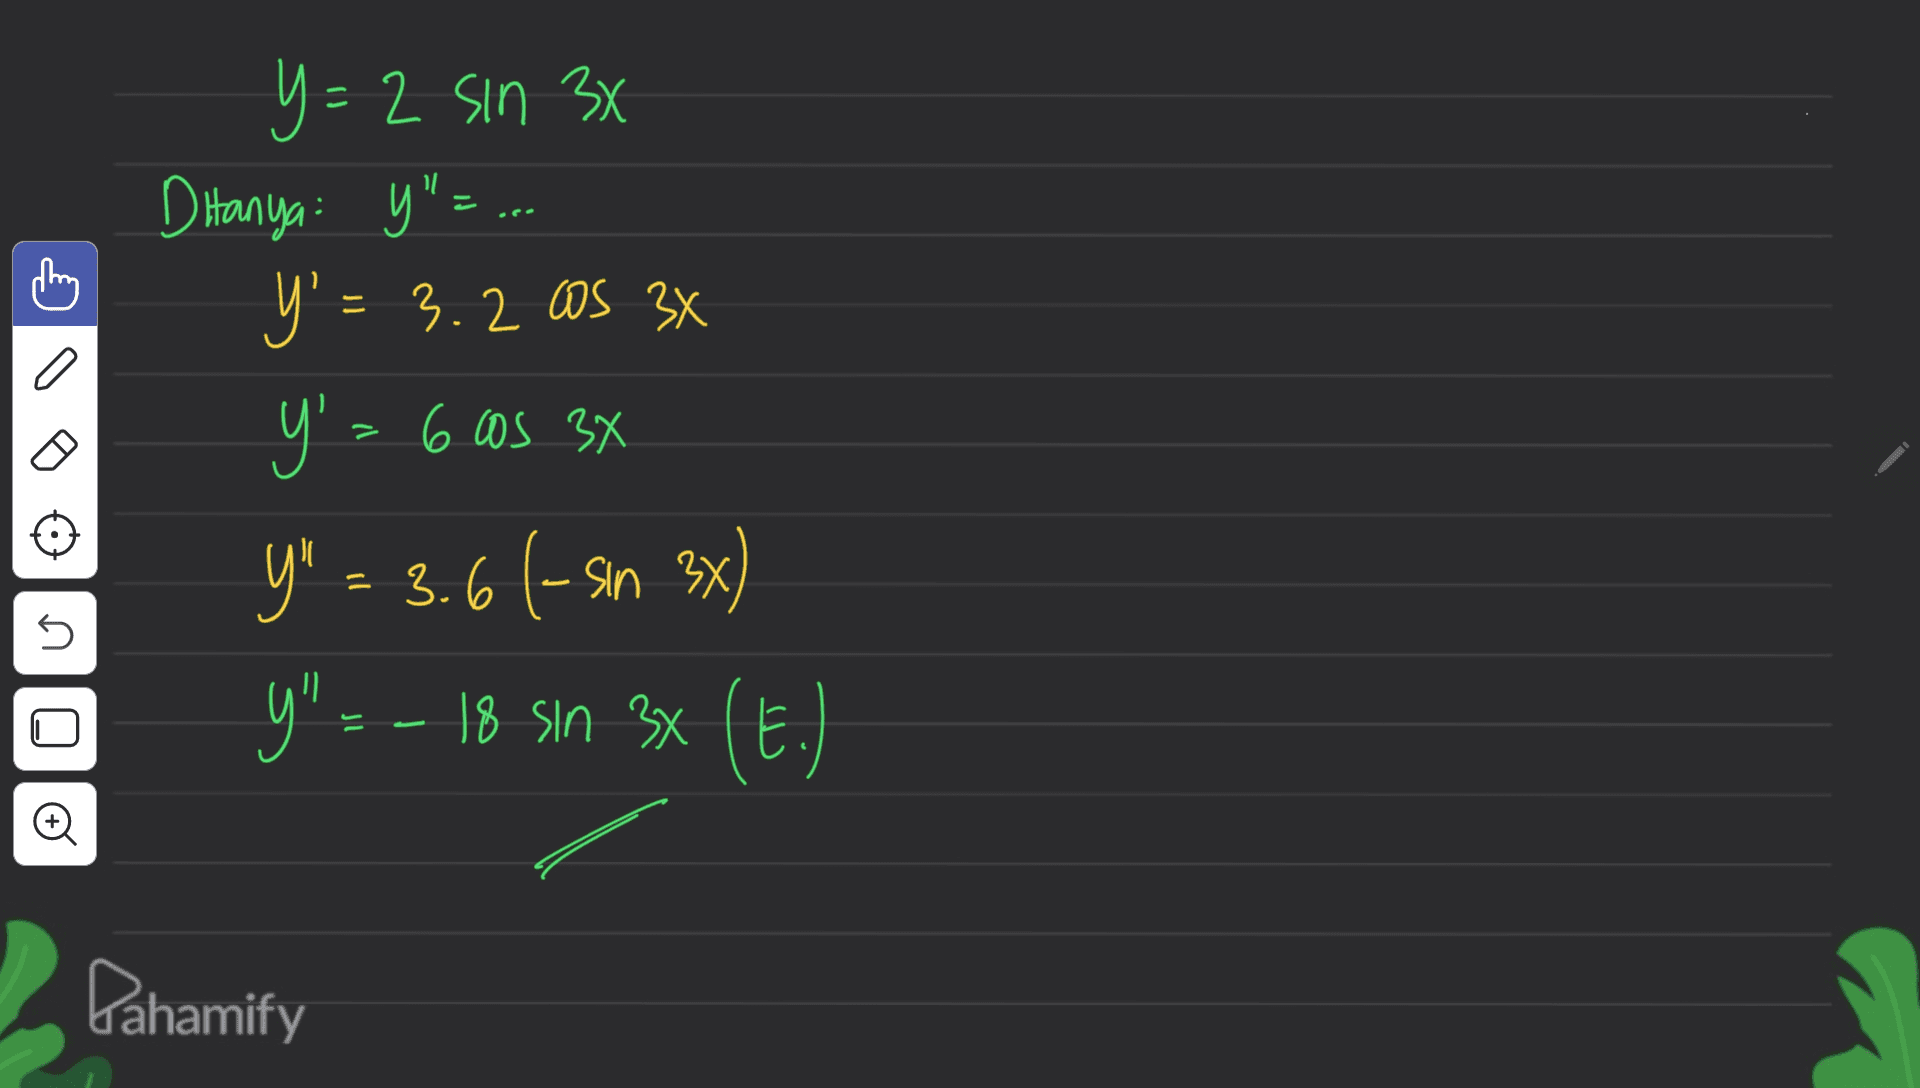 Y y=2 sin 34 D Hanya y"=... Y' = 3.2 ms 3X y = 6 os 34 Y" = 3.6 (-sin 3x) Y" --- 18 sin 3x (E.) n o Pahamify 